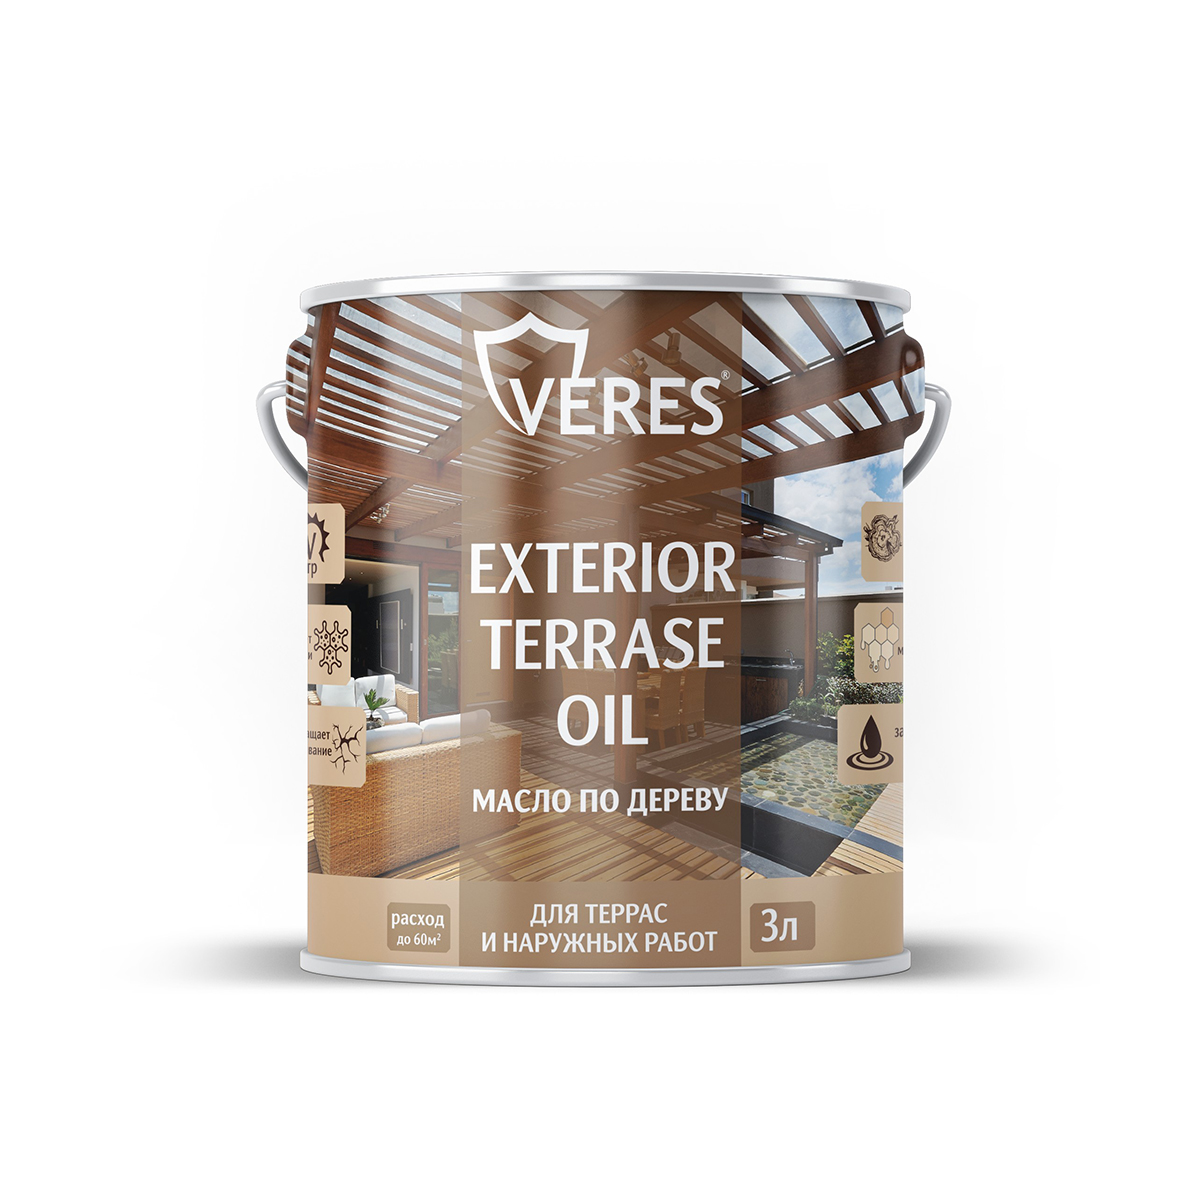 Масло для дерева Veres Exterior Terrase Oil, 3 л, дуб - купить в ООО "Кол-Сервис", цена на Мегамаркет